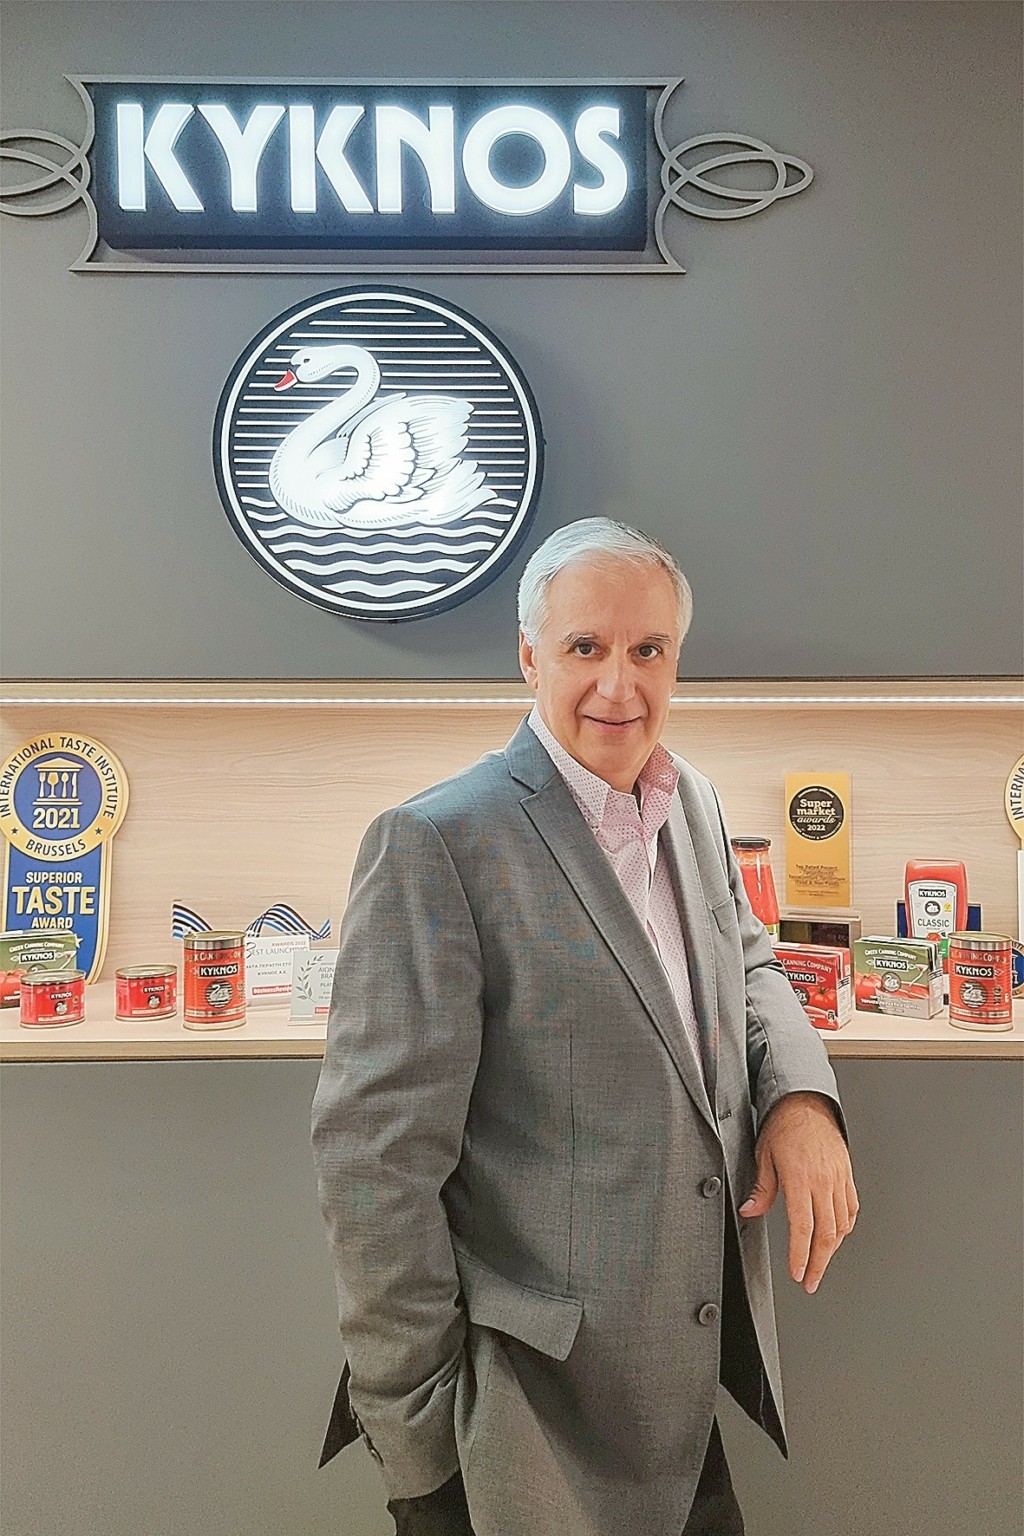 Αχιλλέας Αγγελόπουλος (Κύκνος): Η ιστορική εταιρεία μετασχηματίζεται σε βιομηχανία τροφίμων